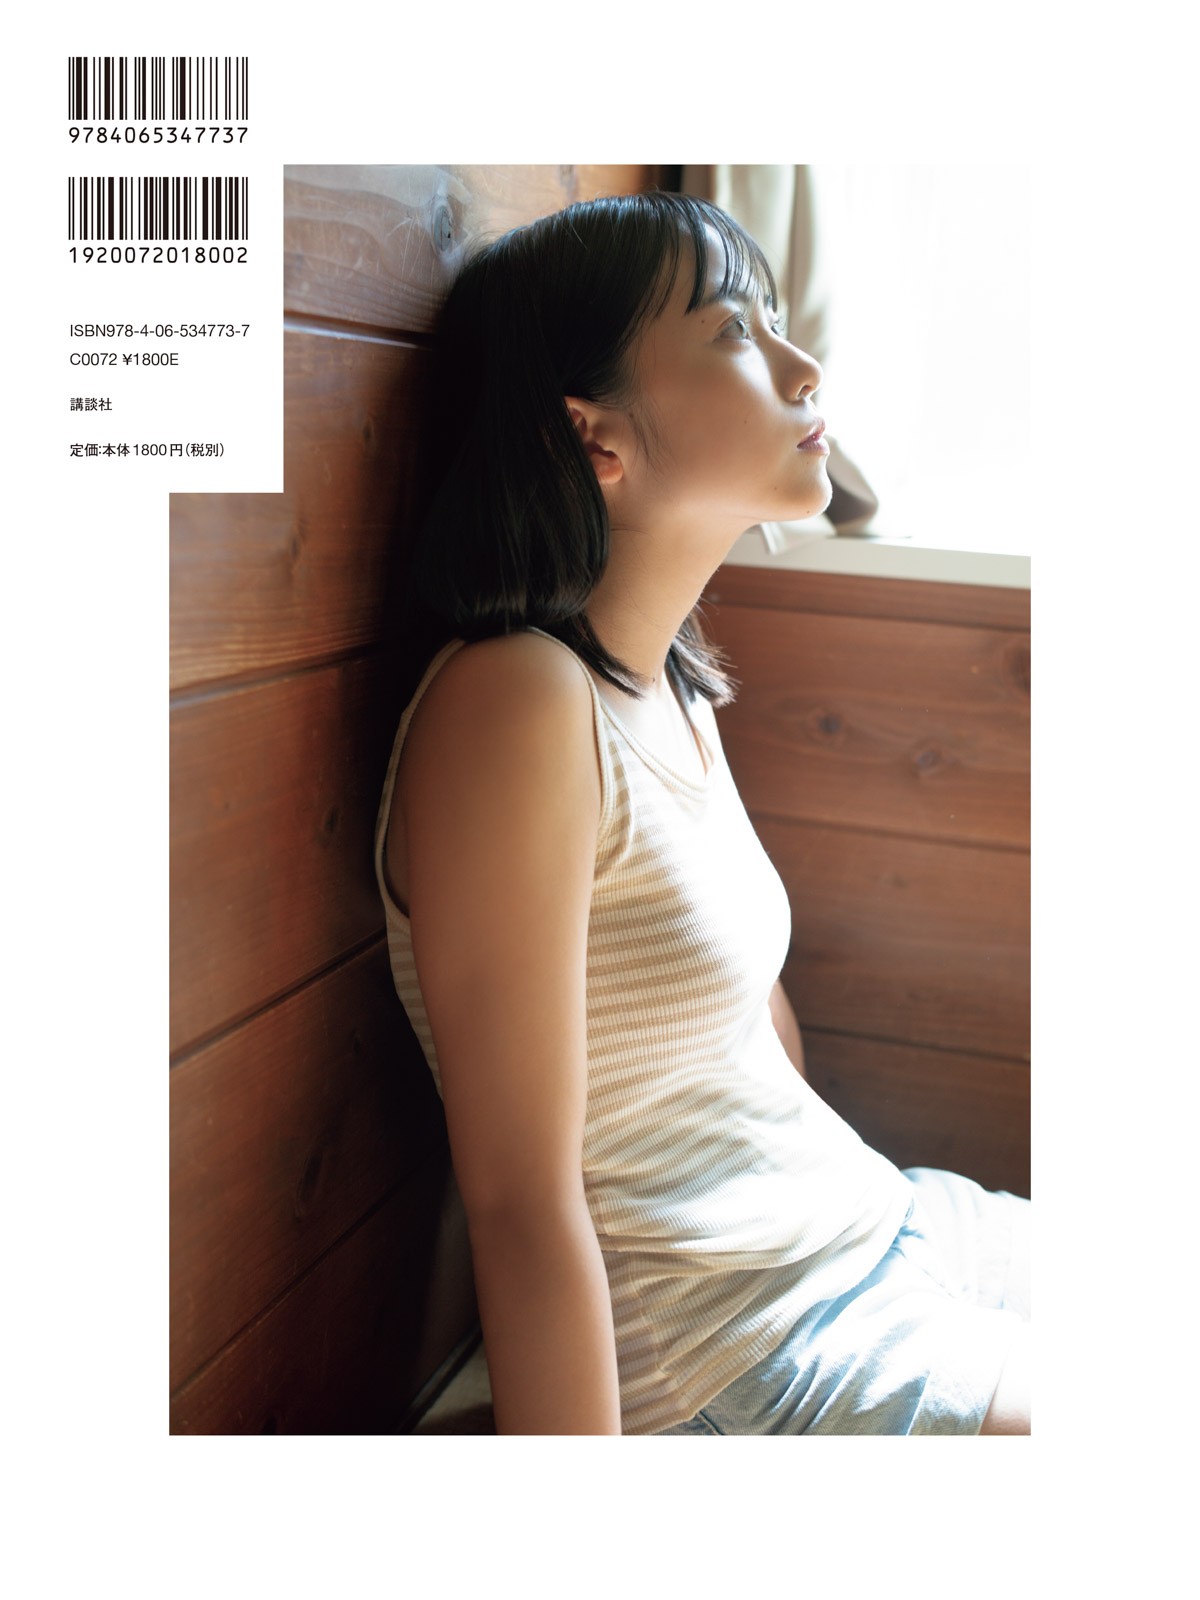 日向坂46・正源司陽子、タンクトップ姿で”青春感” 『TRIANGLE magazine 02』裏表紙解禁 | ORICON NEWS